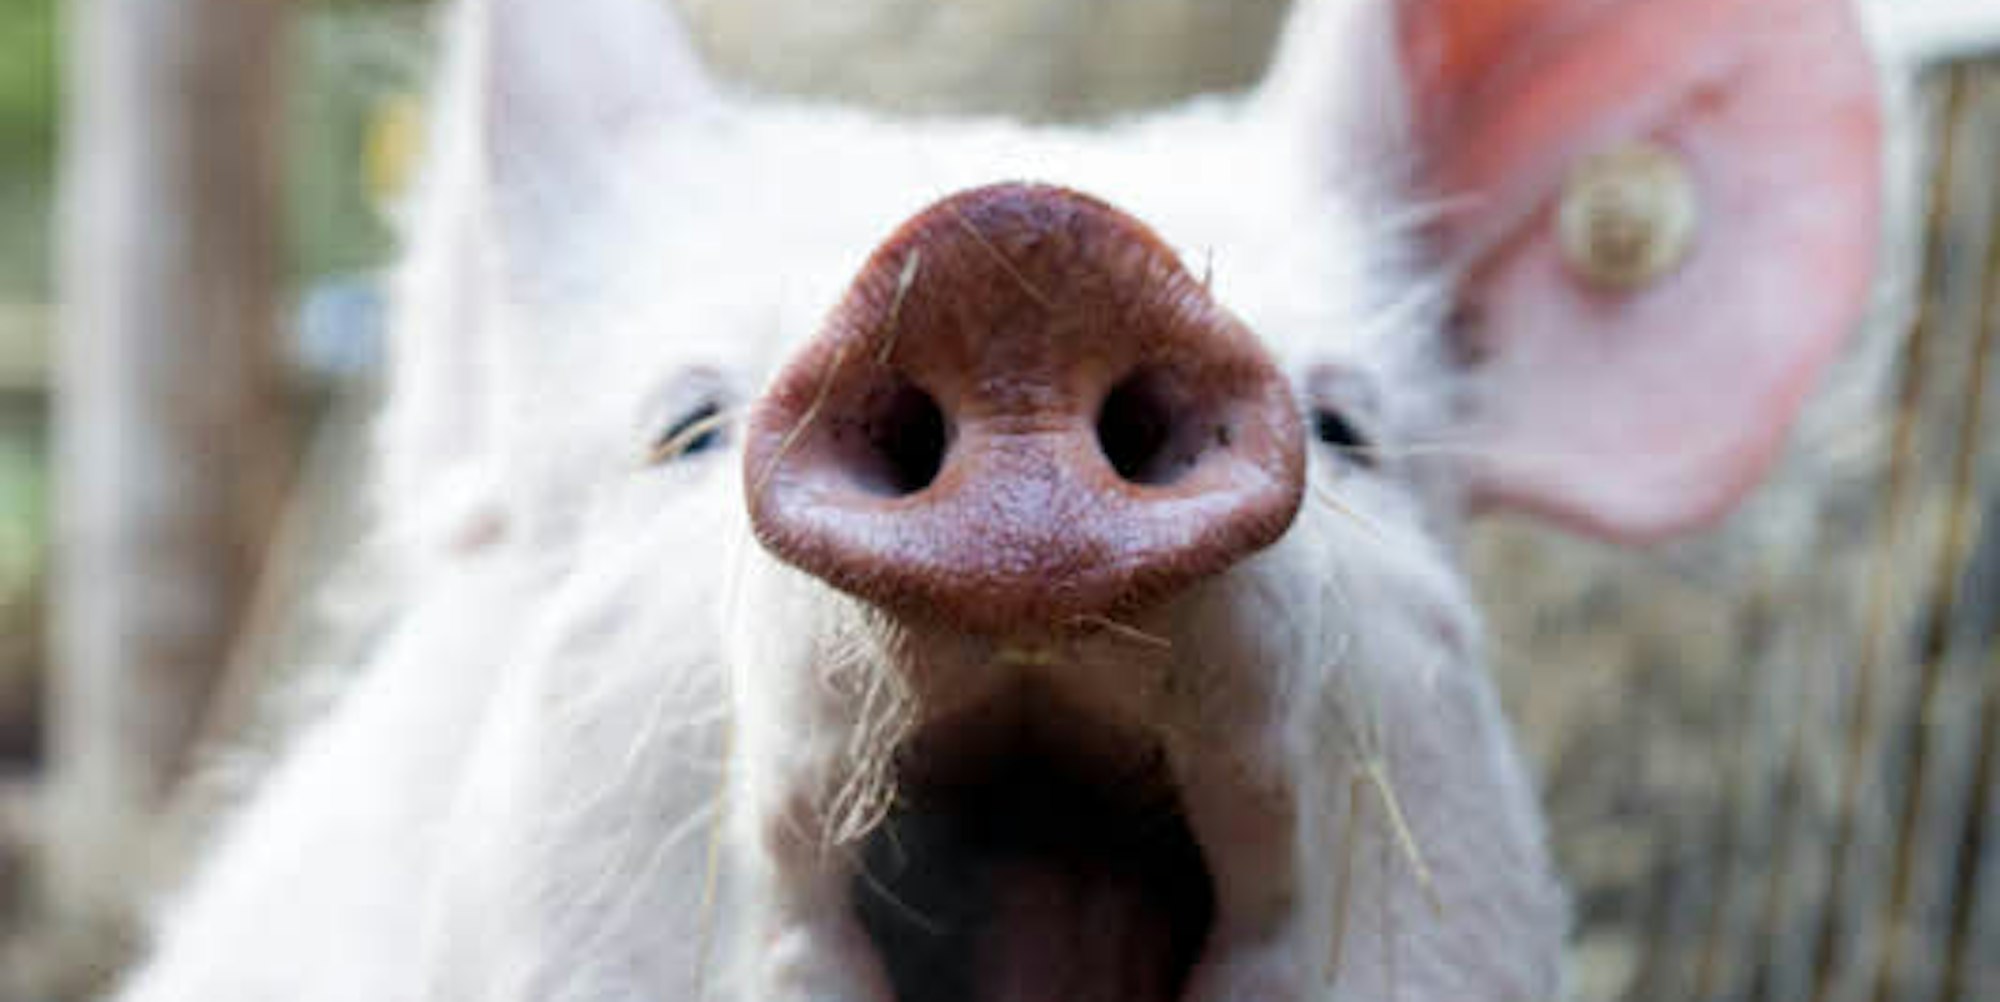 Manchmal steckt Hausschwein Amelie seine vorwitzige Nase in Sachen, die es gar nichts angehen – zum Beispiel ins Blumenbeet.